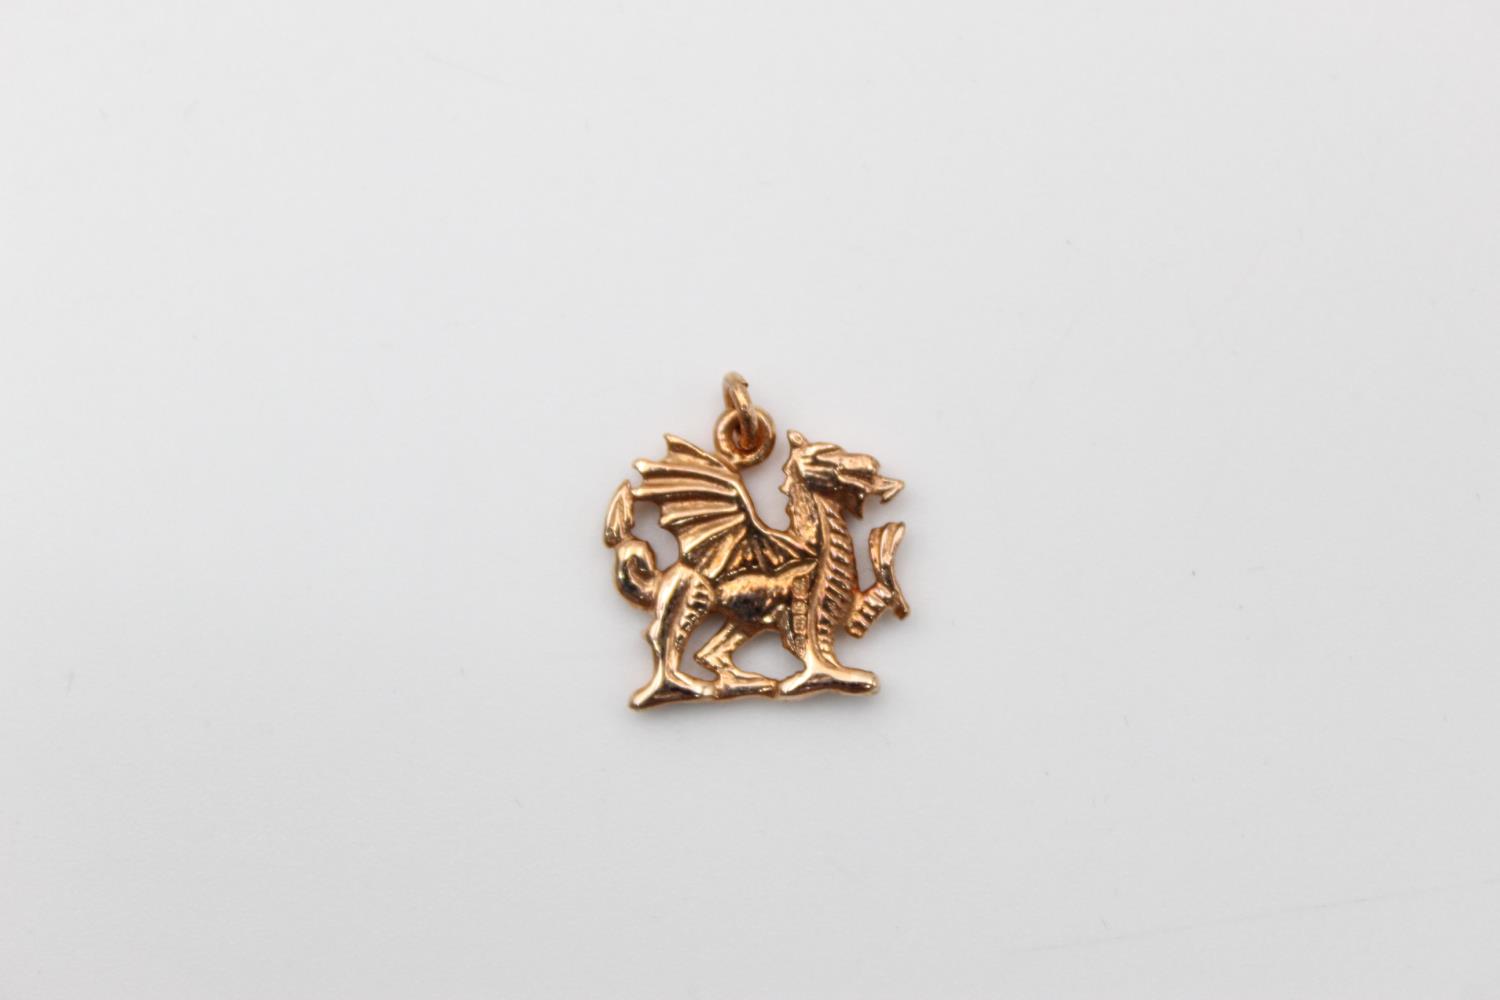 9ct Gold Cymru Gold dragon pendant 2.2g - Image 3 of 6